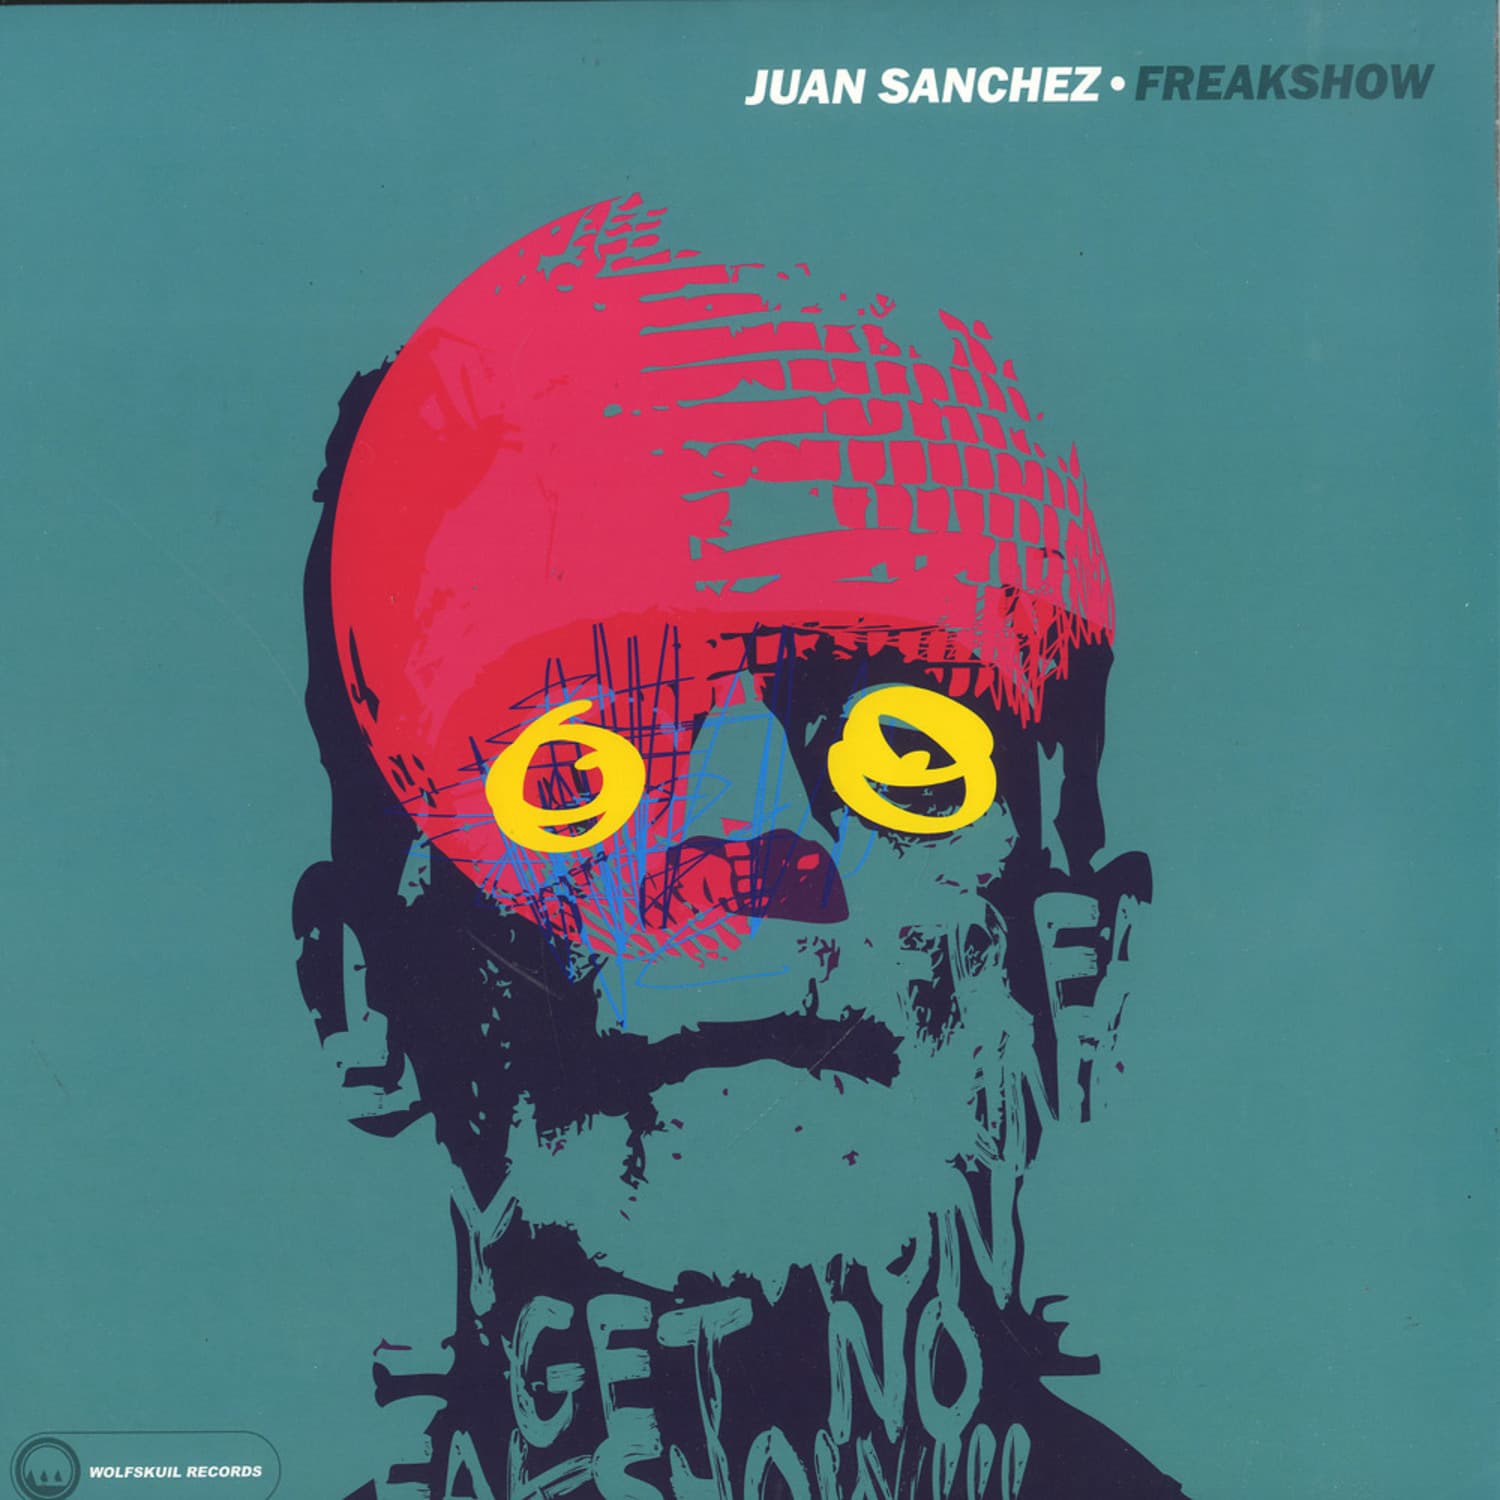 Juan Sanchez - FREAKSHOW / 23 POSITIONS